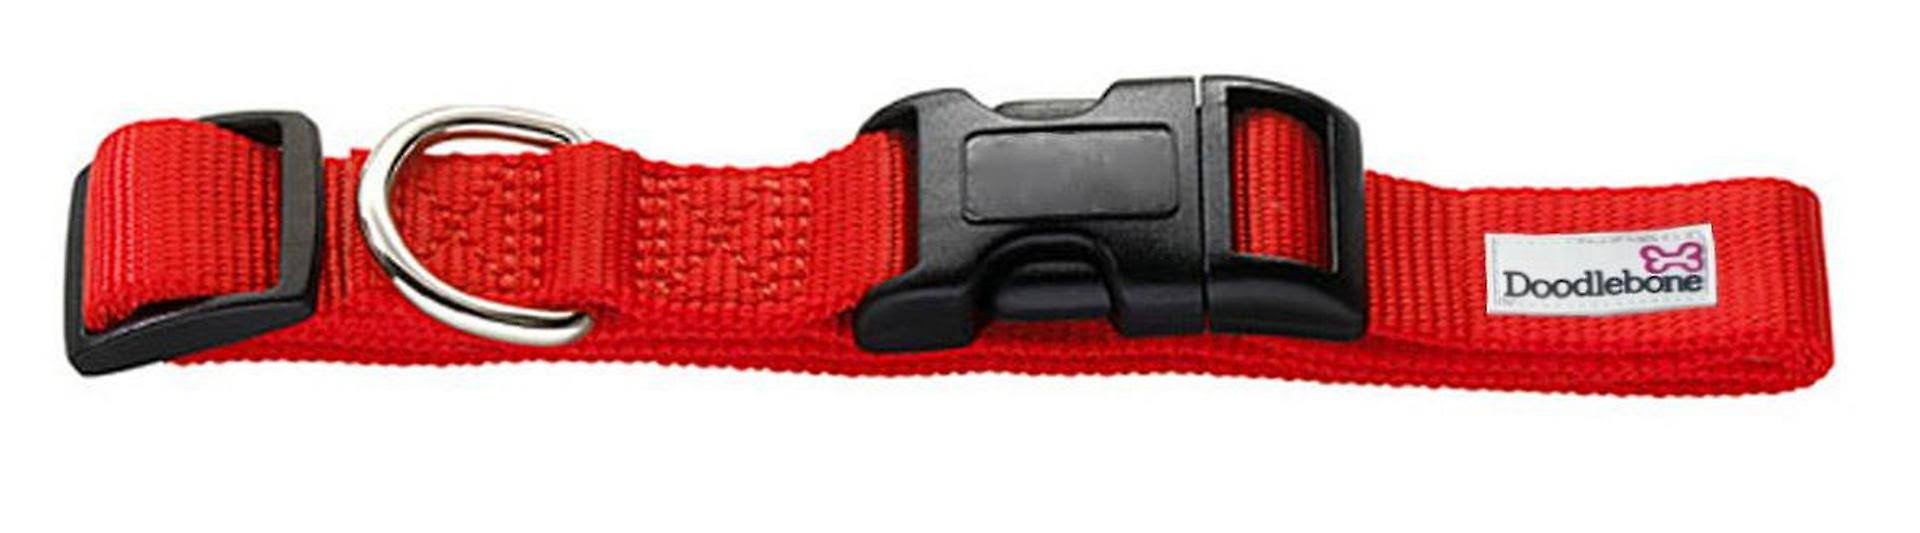 Doodlebone Bold Padded Dog Collar - Red, Large